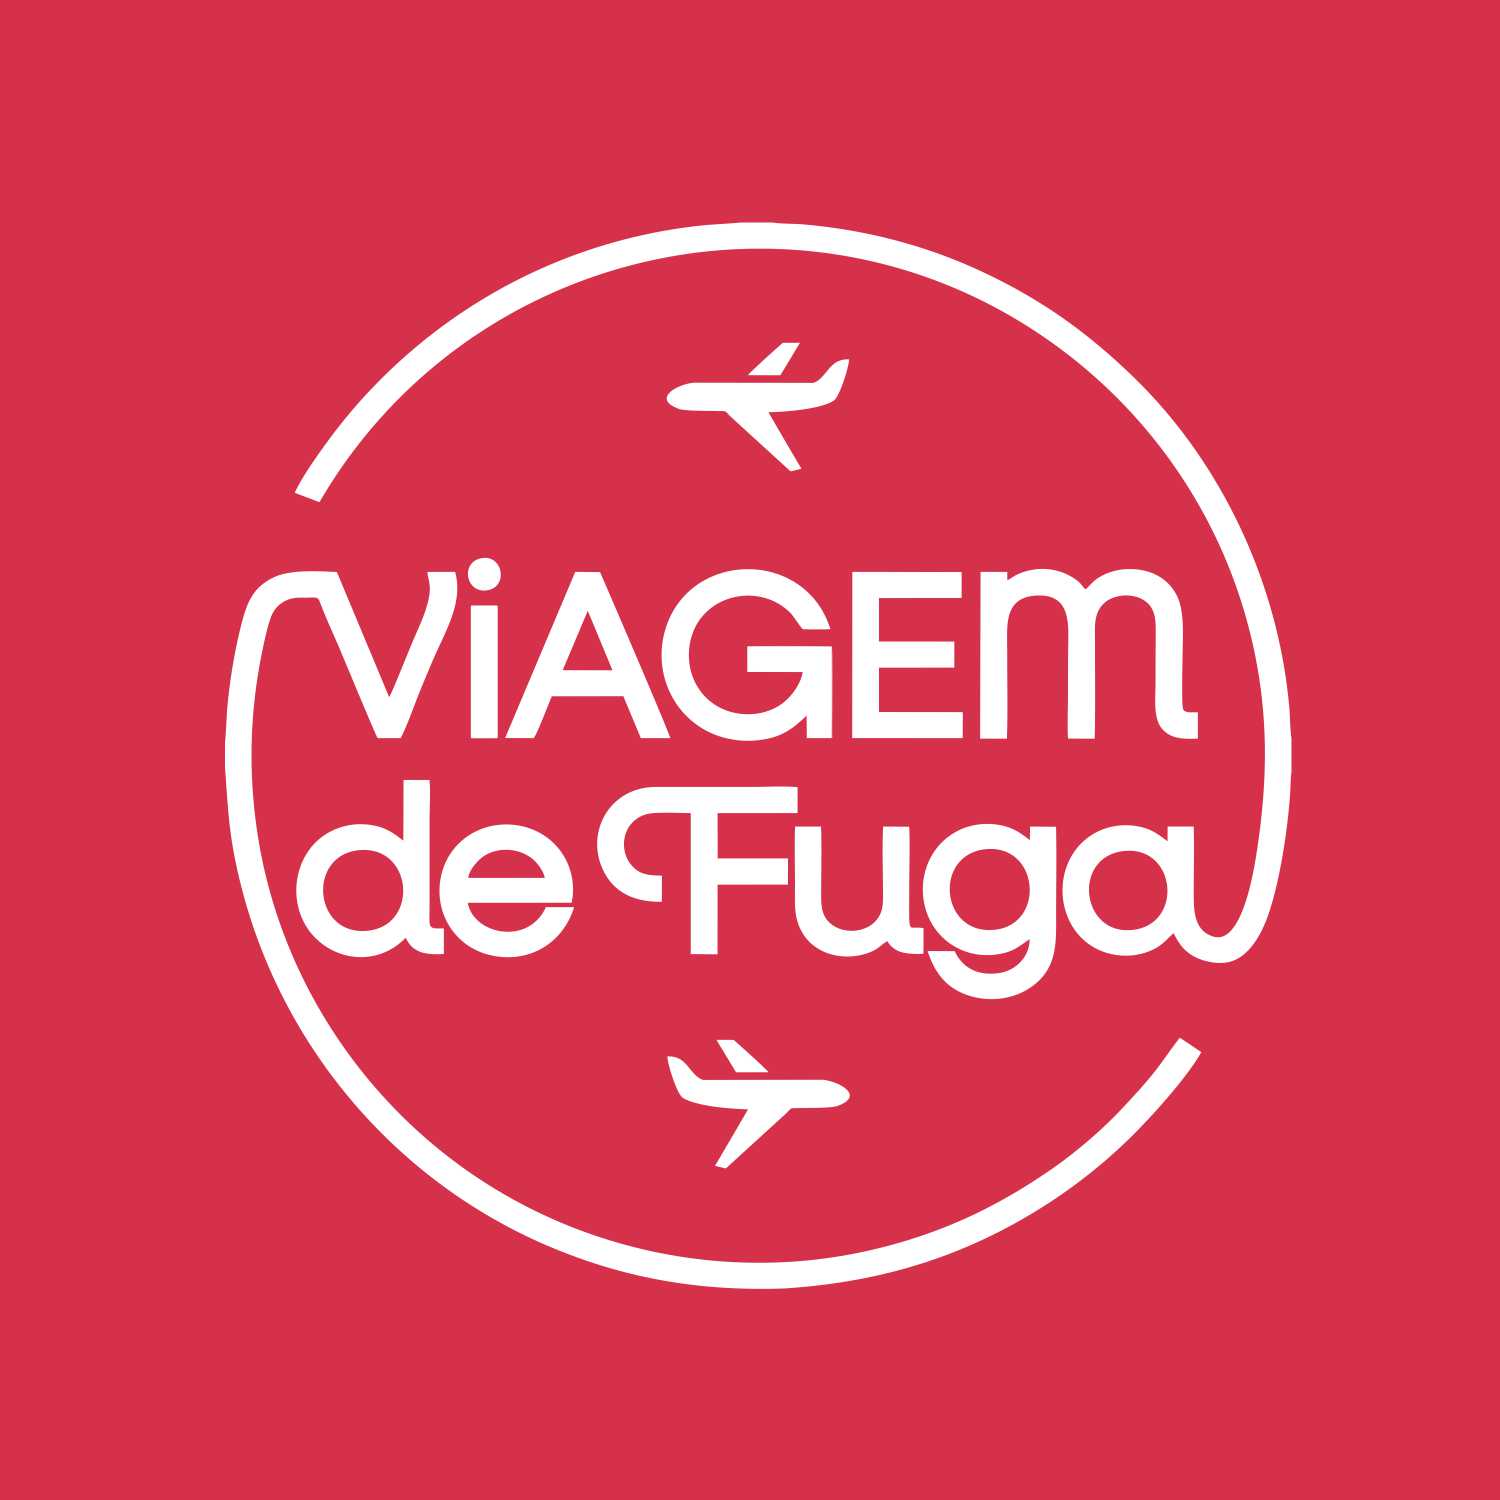 (c) Viagemdefuga.com.br